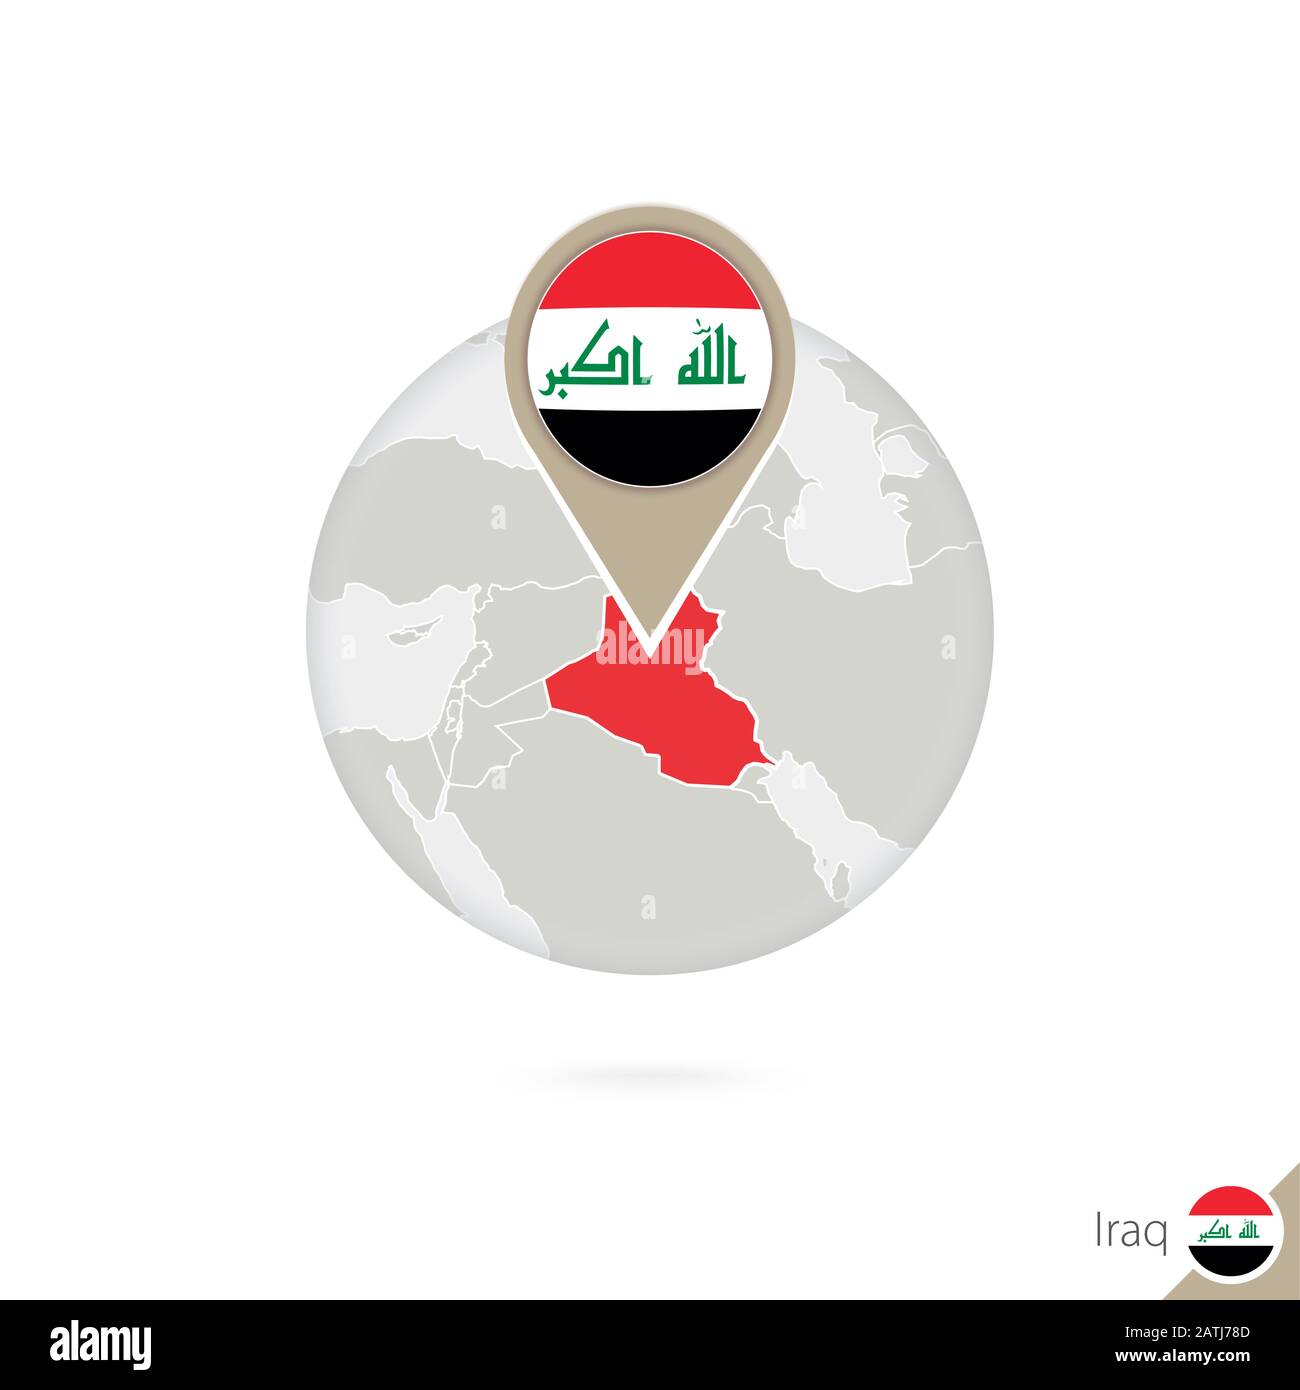 Iraq mappa e bandiera in cerchio. Mappa di Iraq, pin bandiera Iraq. Mappa dell'Iraq nello stile del mondo. Illustrazione Vettoriale. Illustrazione Vettoriale